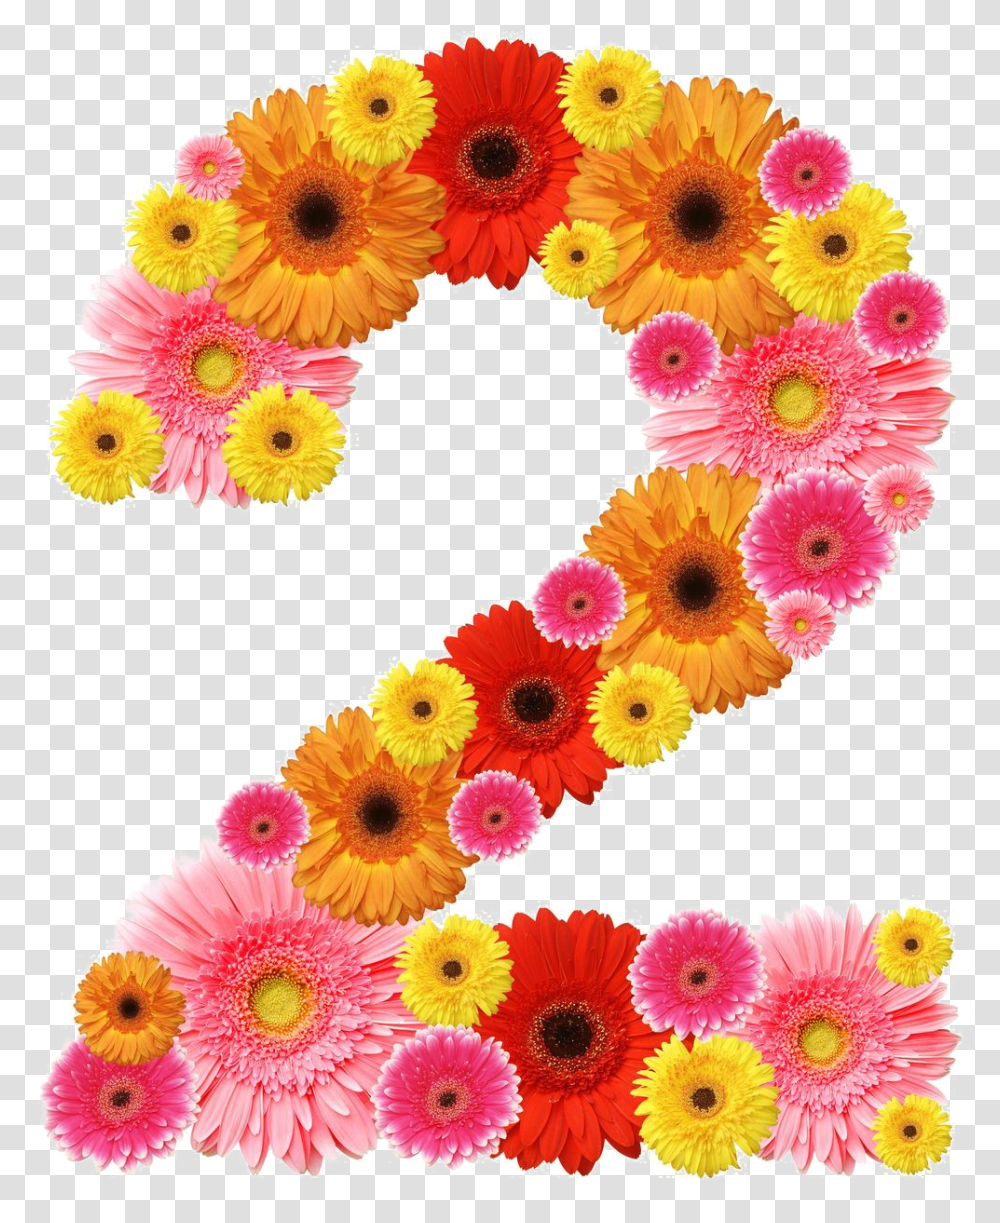 Number Free Download Number 2 Flower Design, Symbol, Text, Graphics, Art Transparent Png